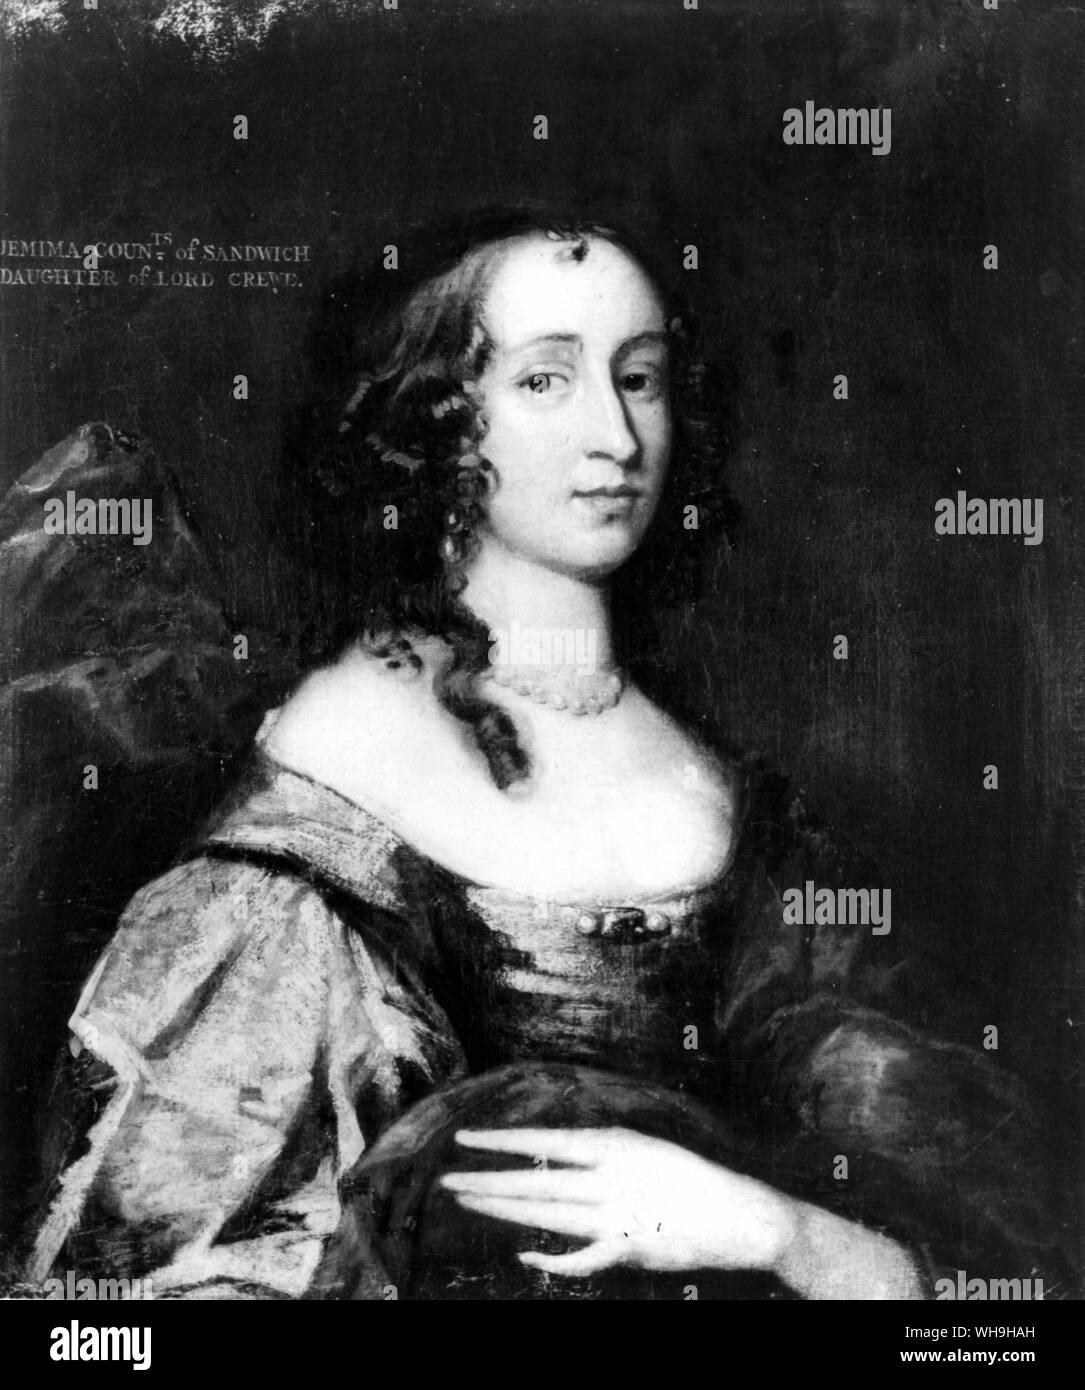 Jemina, contessa di sandwich. Ritratto del XVIII secolo. Foto Stock